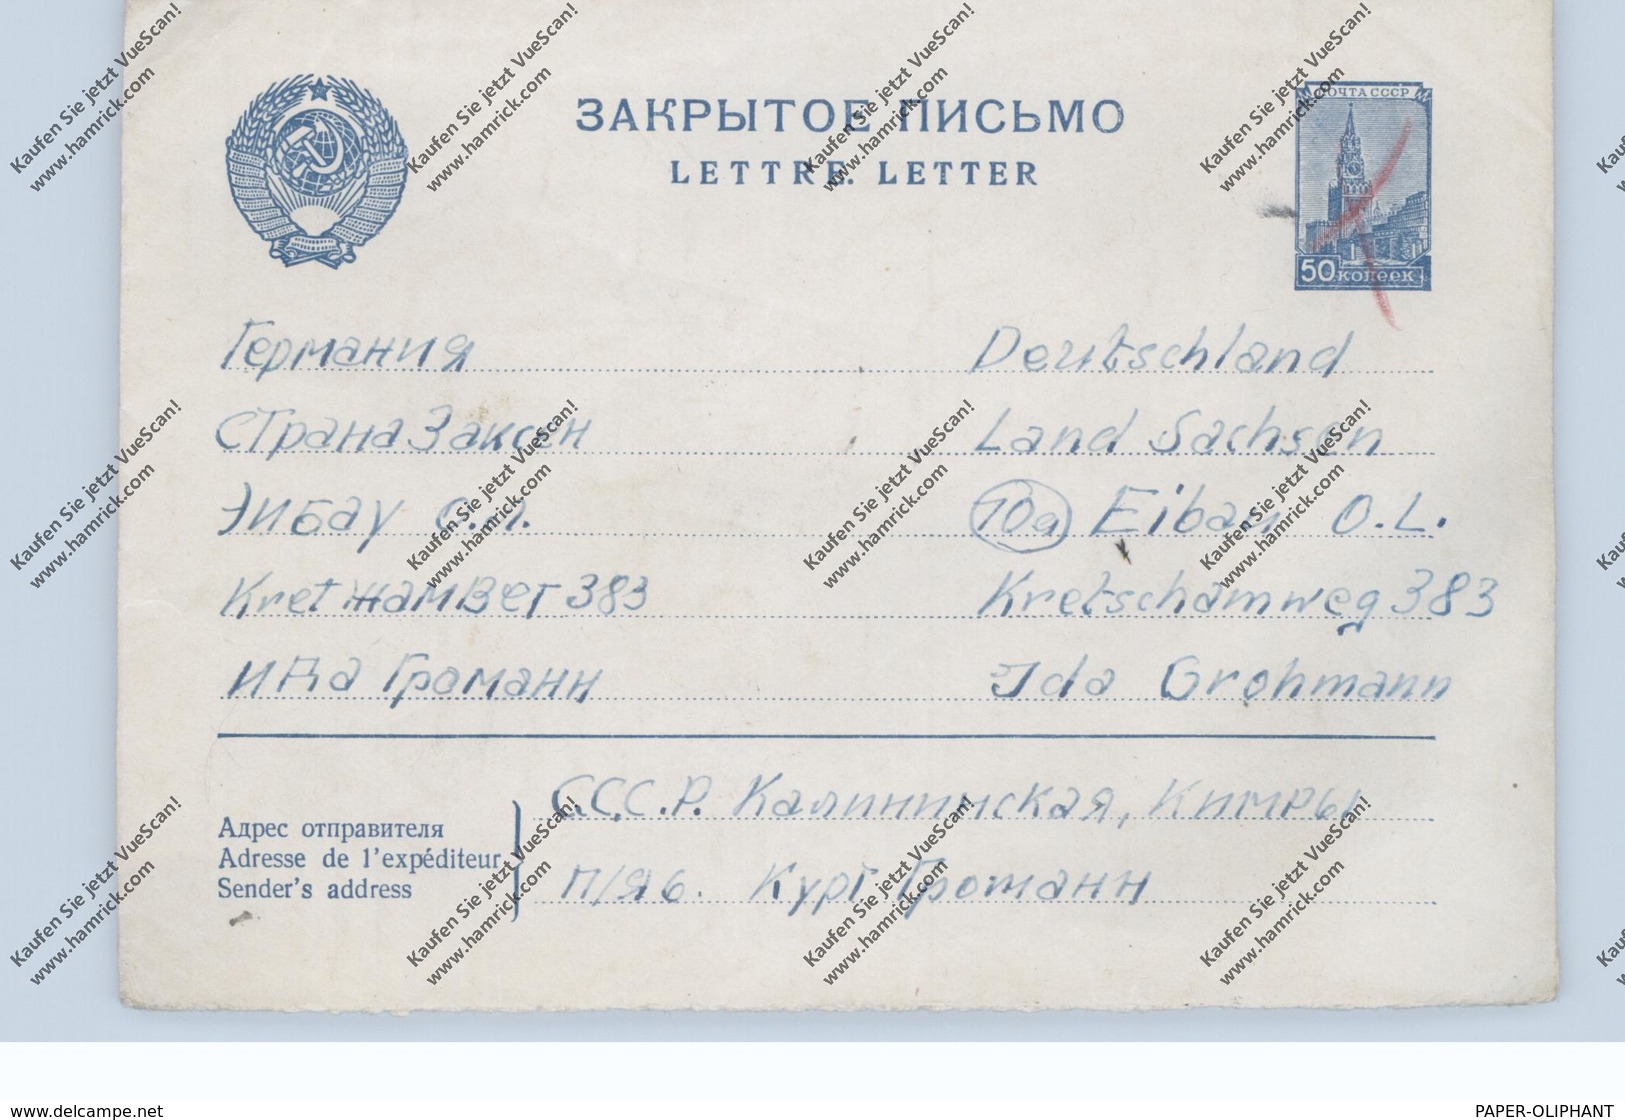 RUSSIA / RUSSLAND, Postal Stationery / Ganzsache, Michel U 114, In Die DDR, Handentwertet - Lettres & Documents